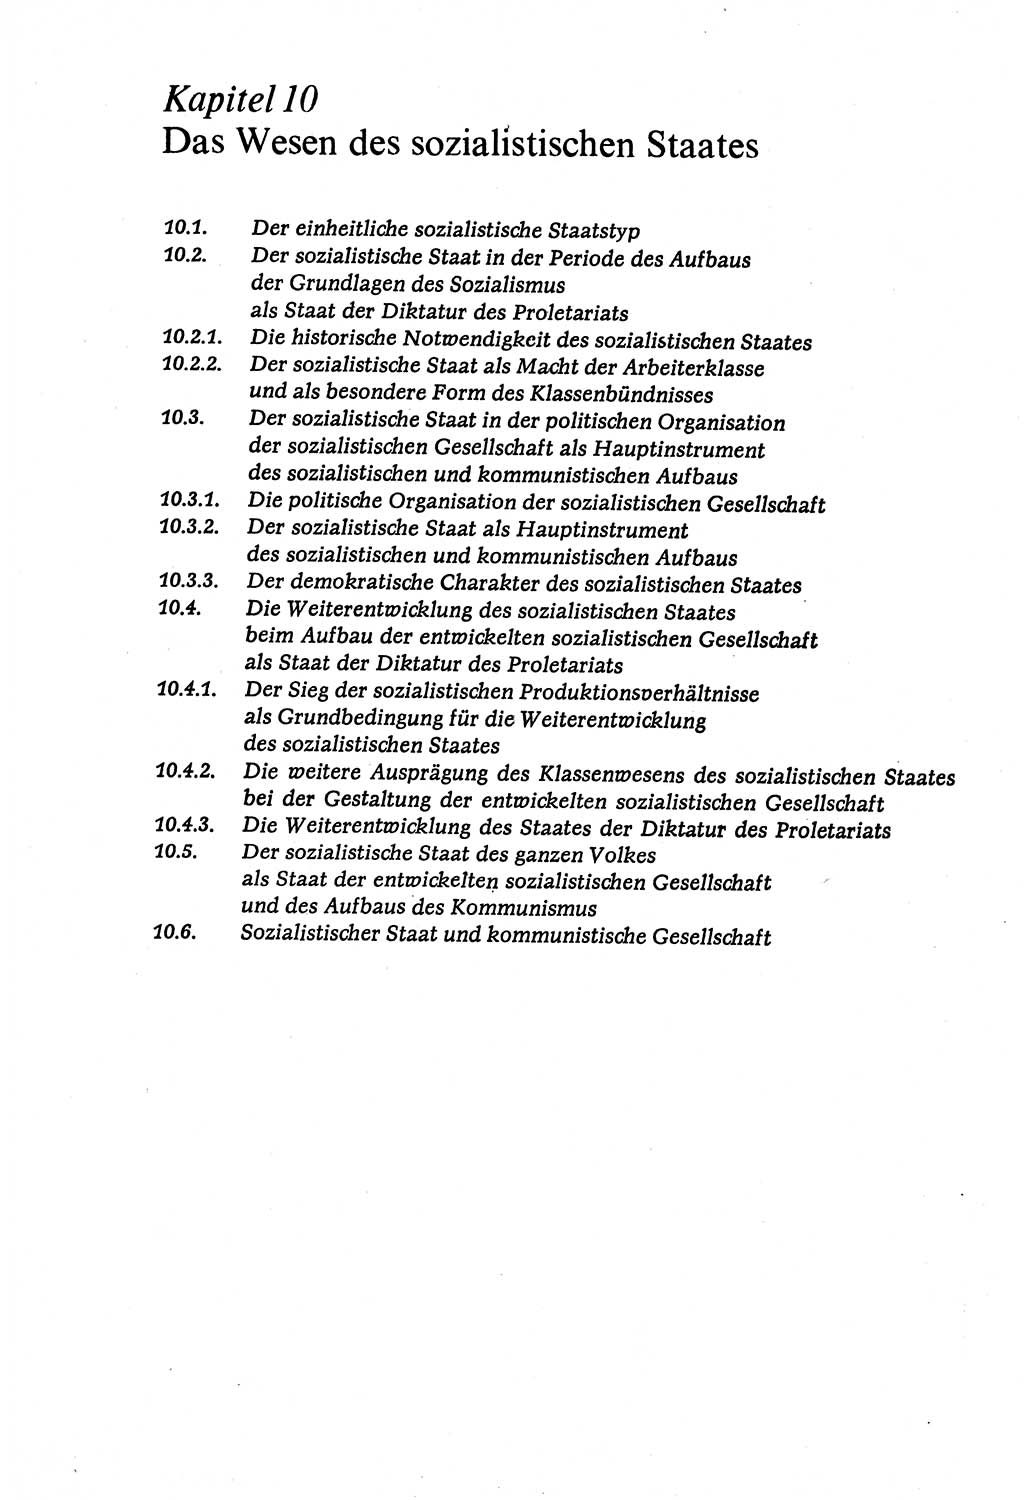 Marxistisch-leninistische (ML) Staats- und Rechtstheorie [Deutsche Demokratische Republik (DDR)], Lehrbuch 1980, Seite 234 (ML St.-R.-Th. DDR Lb. 1980, S. 234)